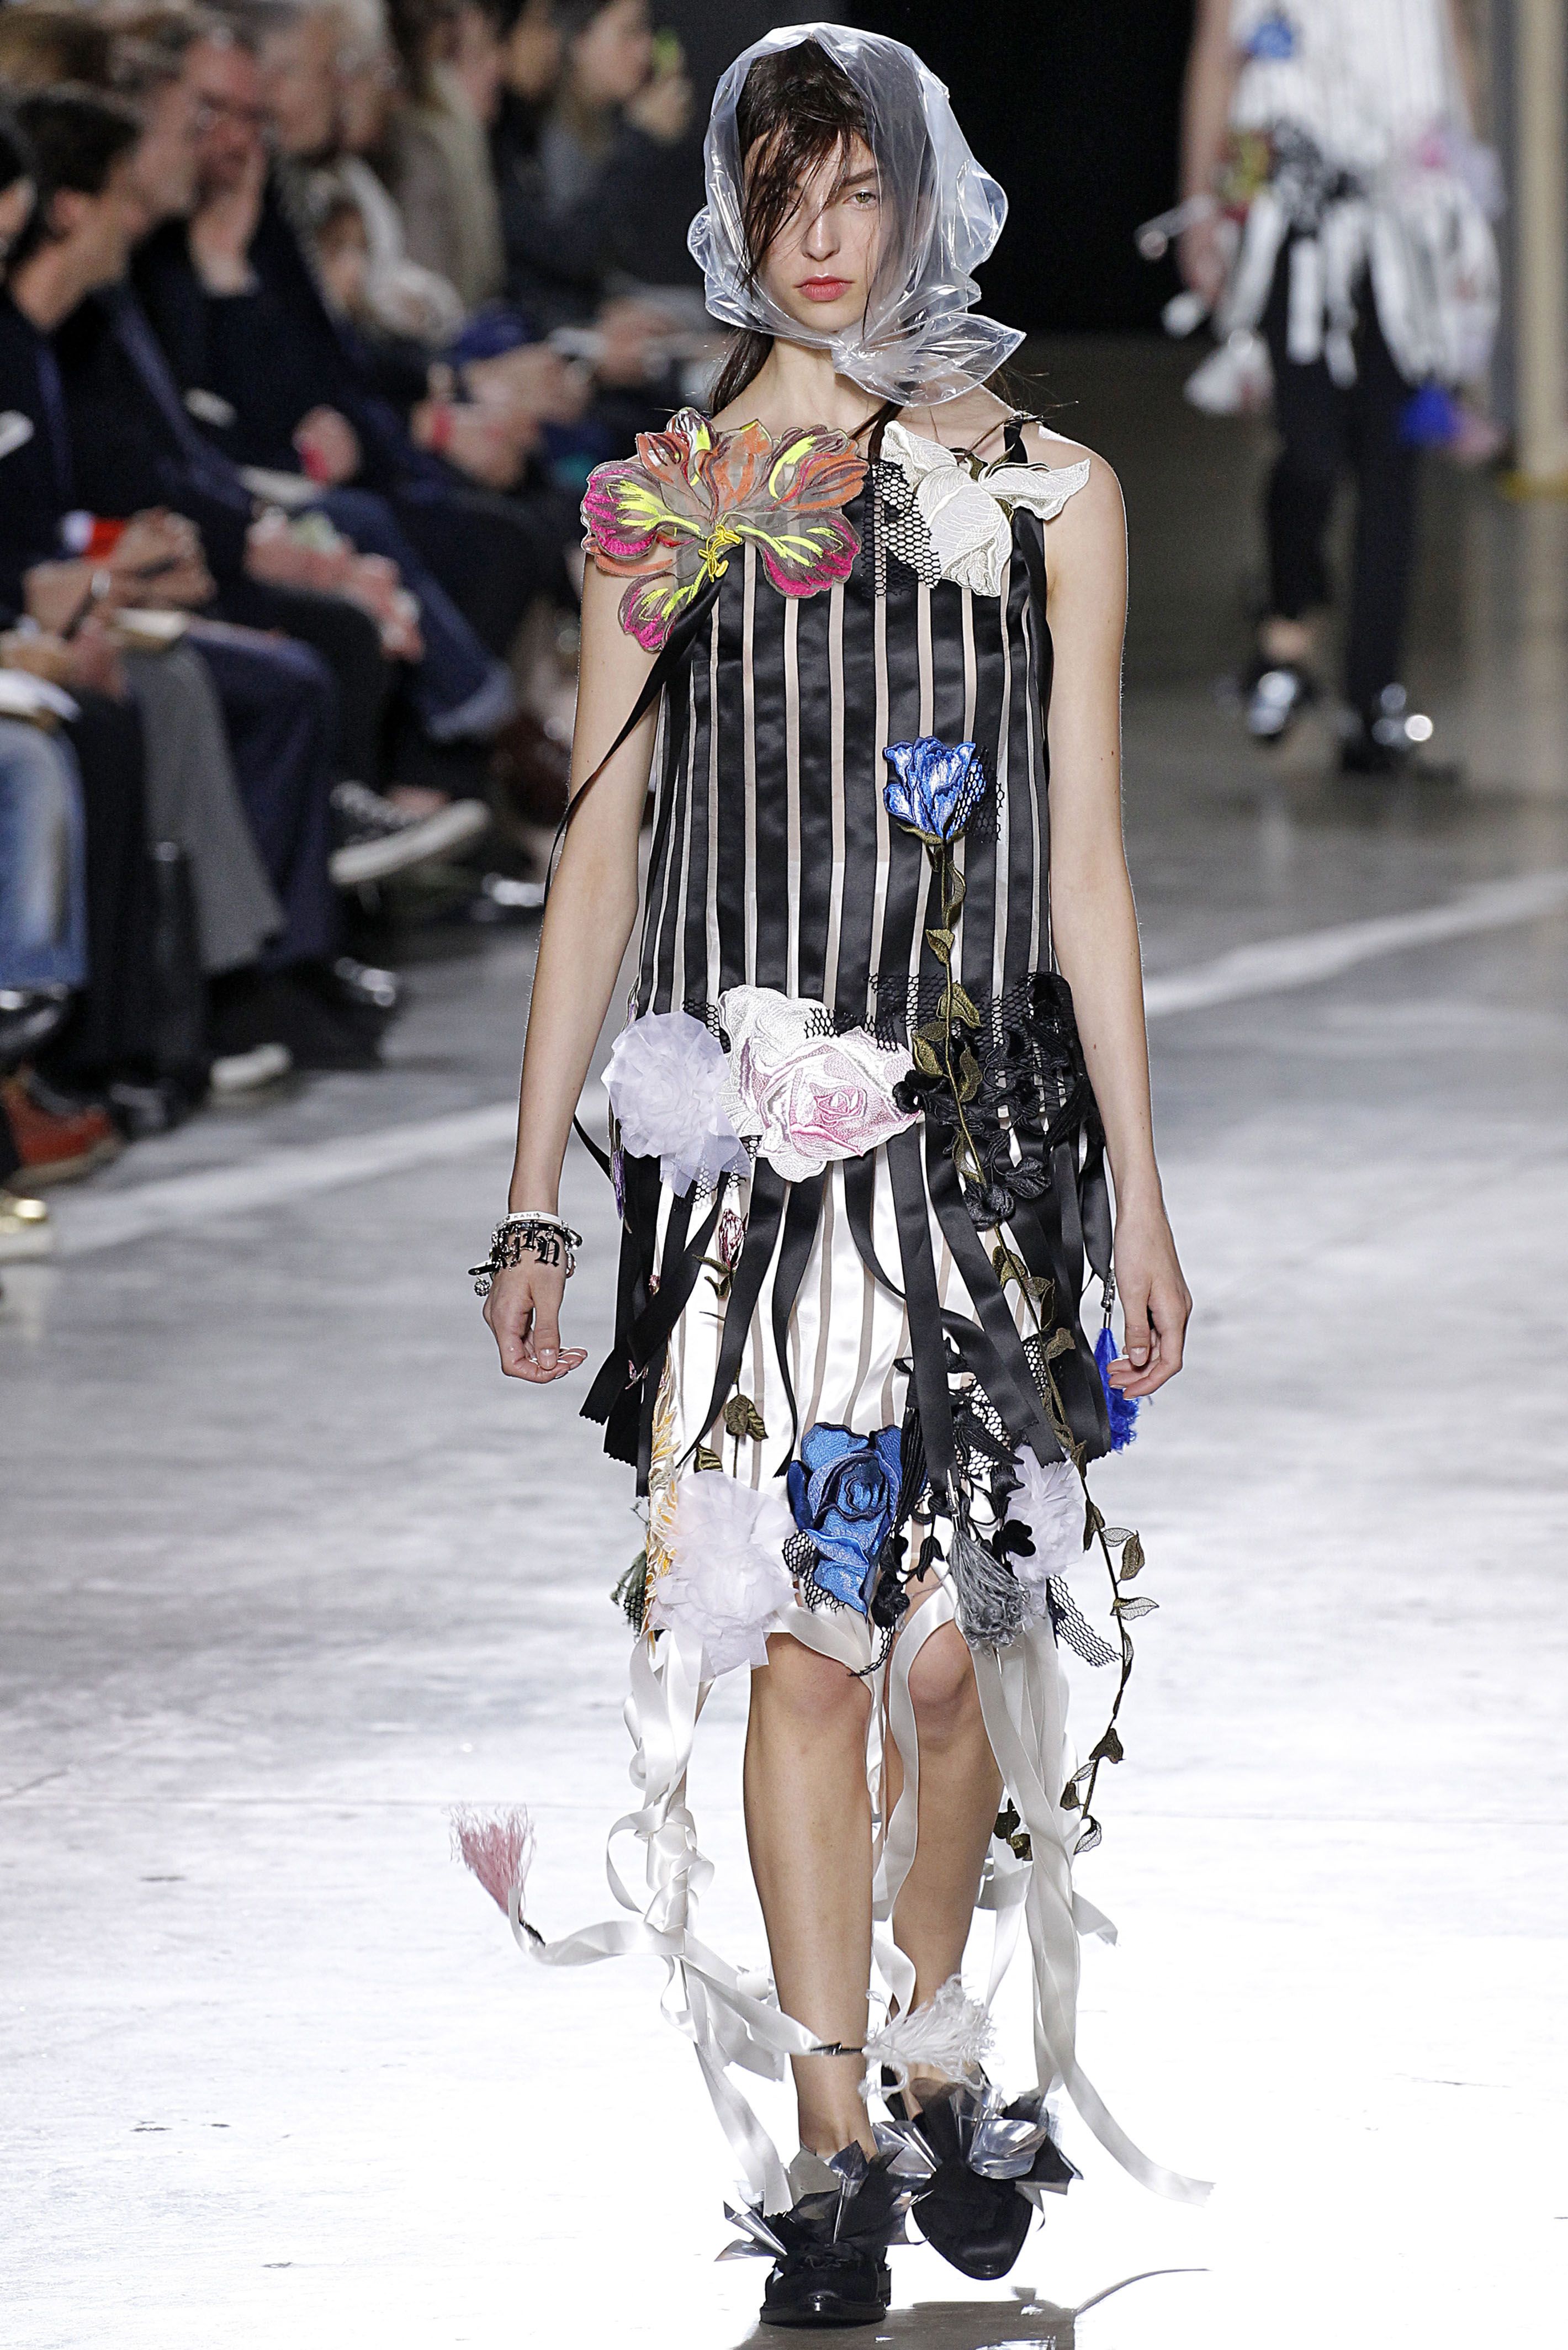 How-To: Trash Bag Dress Fashion Shoot - Goodhart